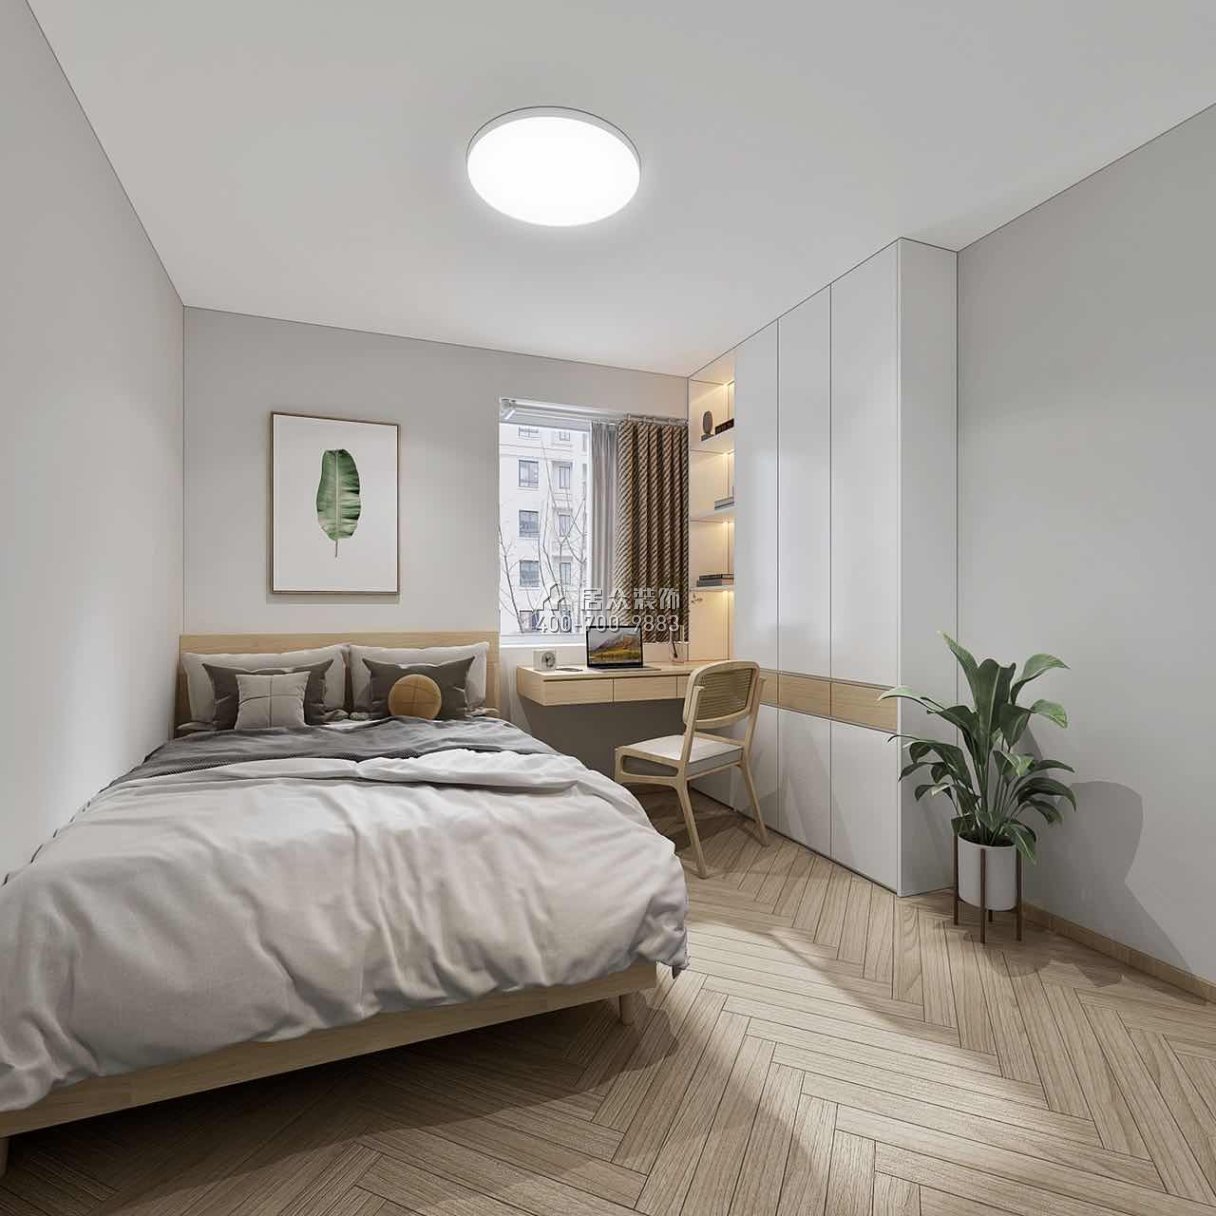 景鵬大廈100平方米現代簡約風格平層戶型臥室裝修效果圖